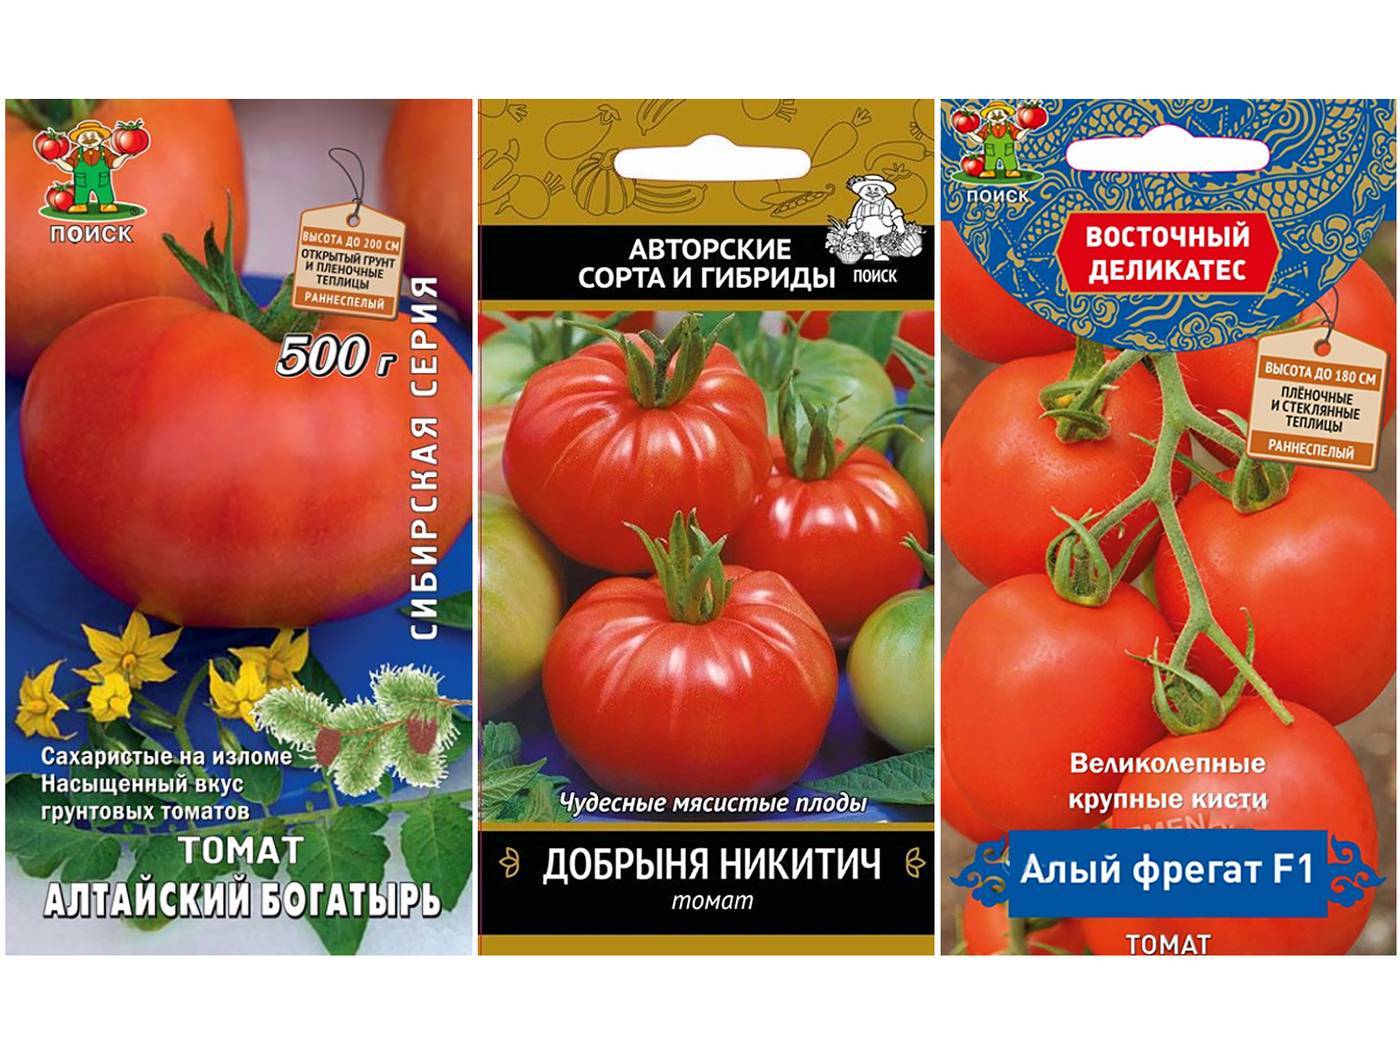 Описание раннего гибридного томата Алый фрегат F1 и агротехника выращивания